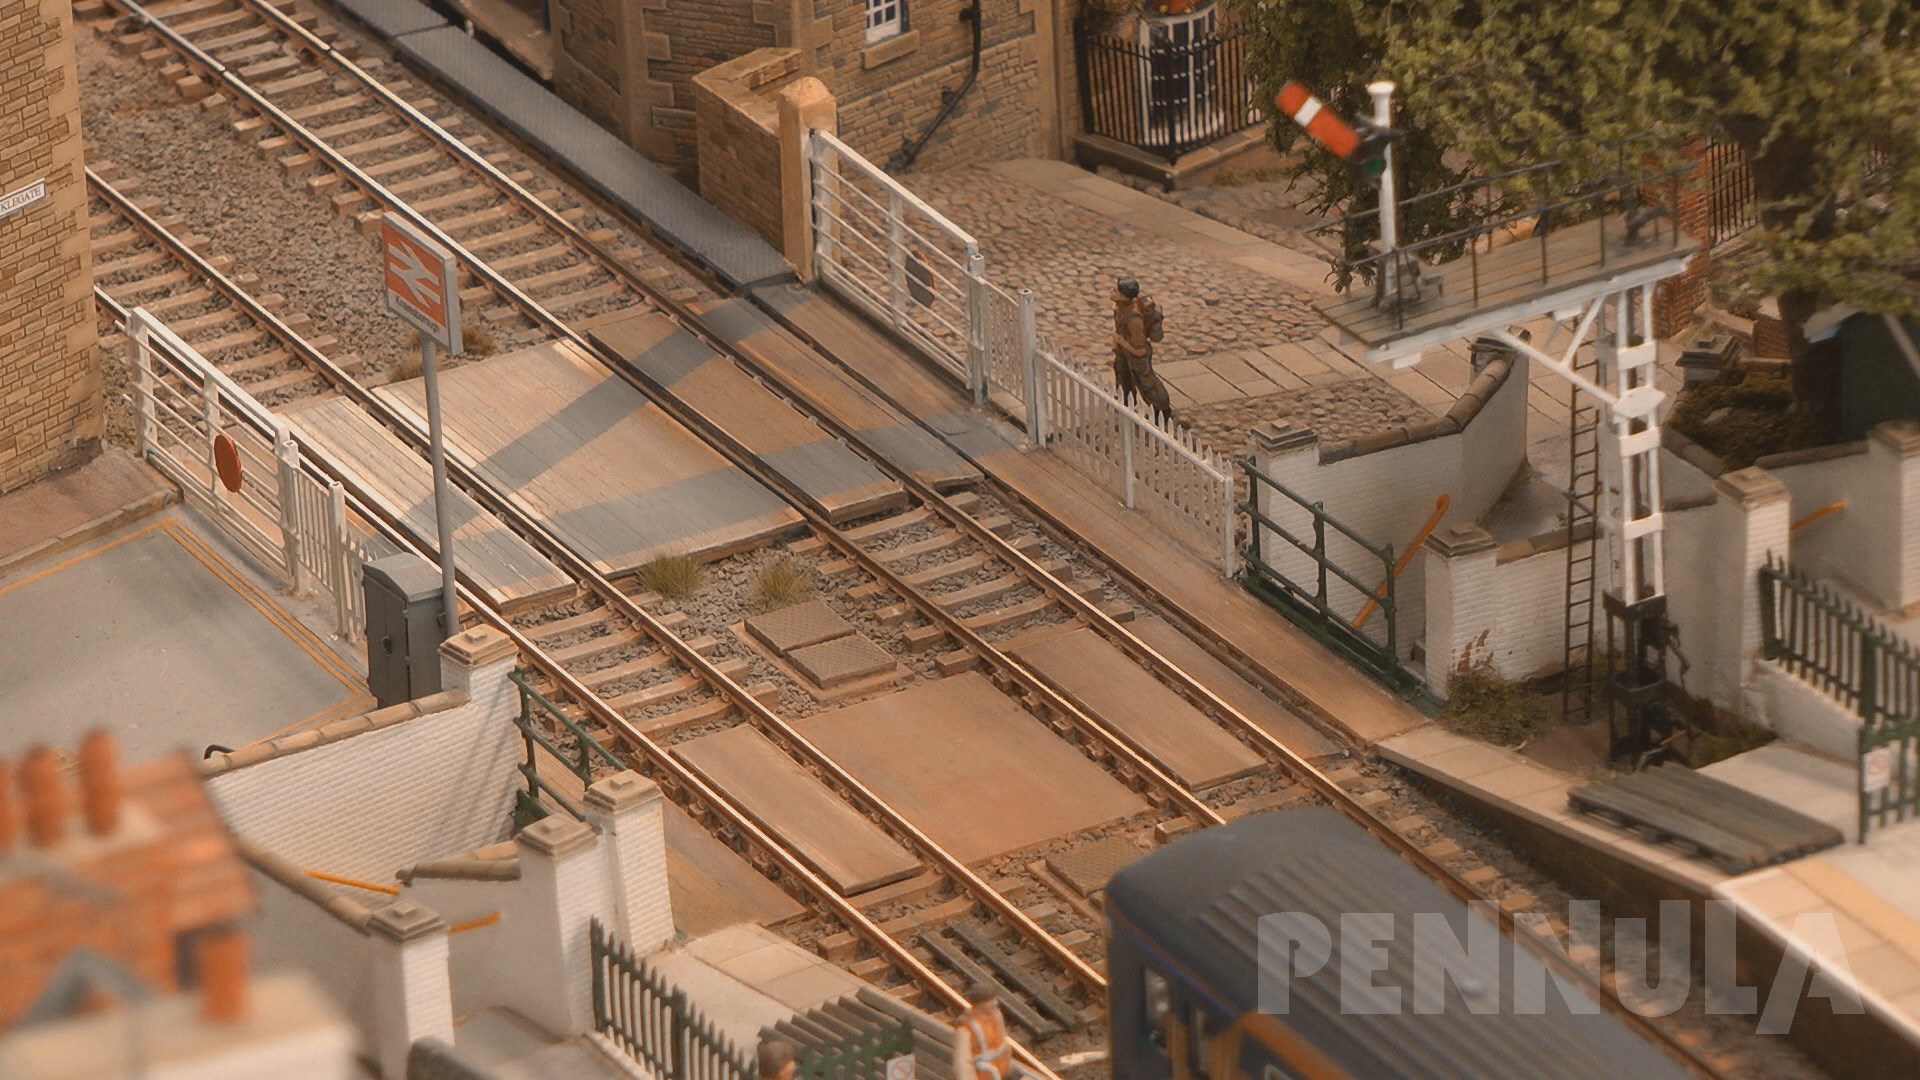 Eine Traumanlage aus England - Eines der schönsten Pennula Modellbahn Videos